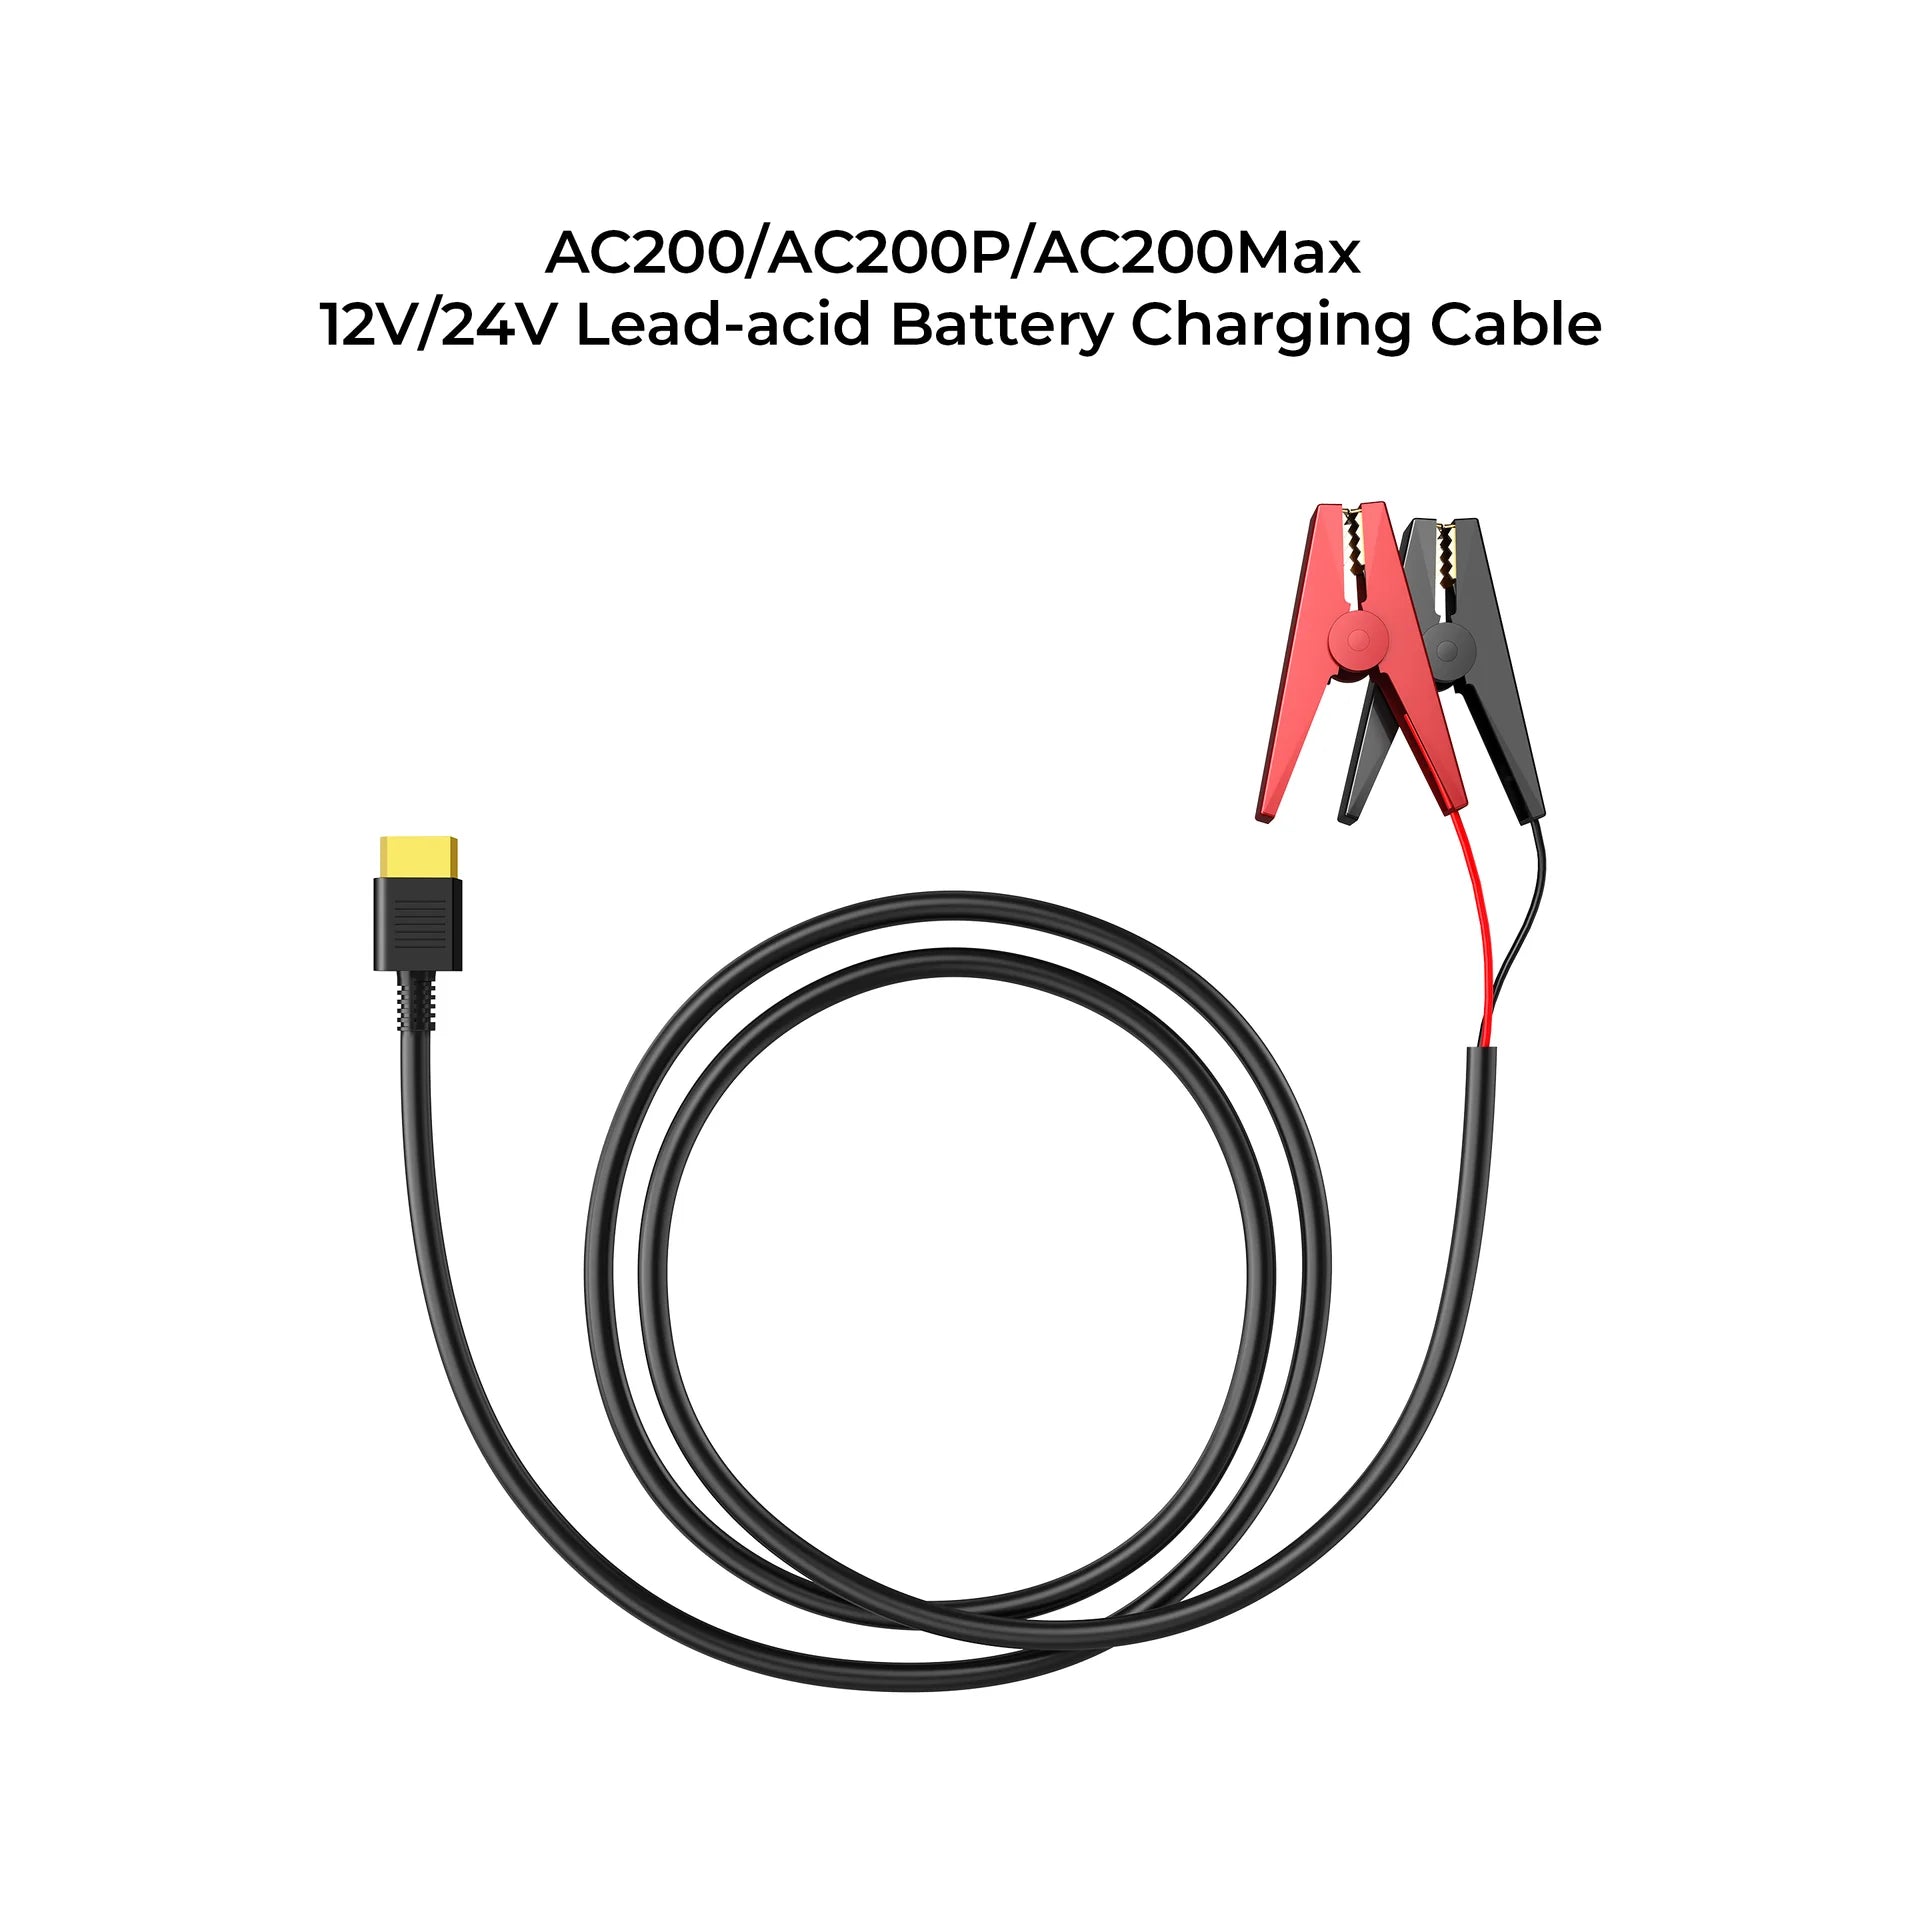 12V/24V Lead-acid Battery Charging Cable